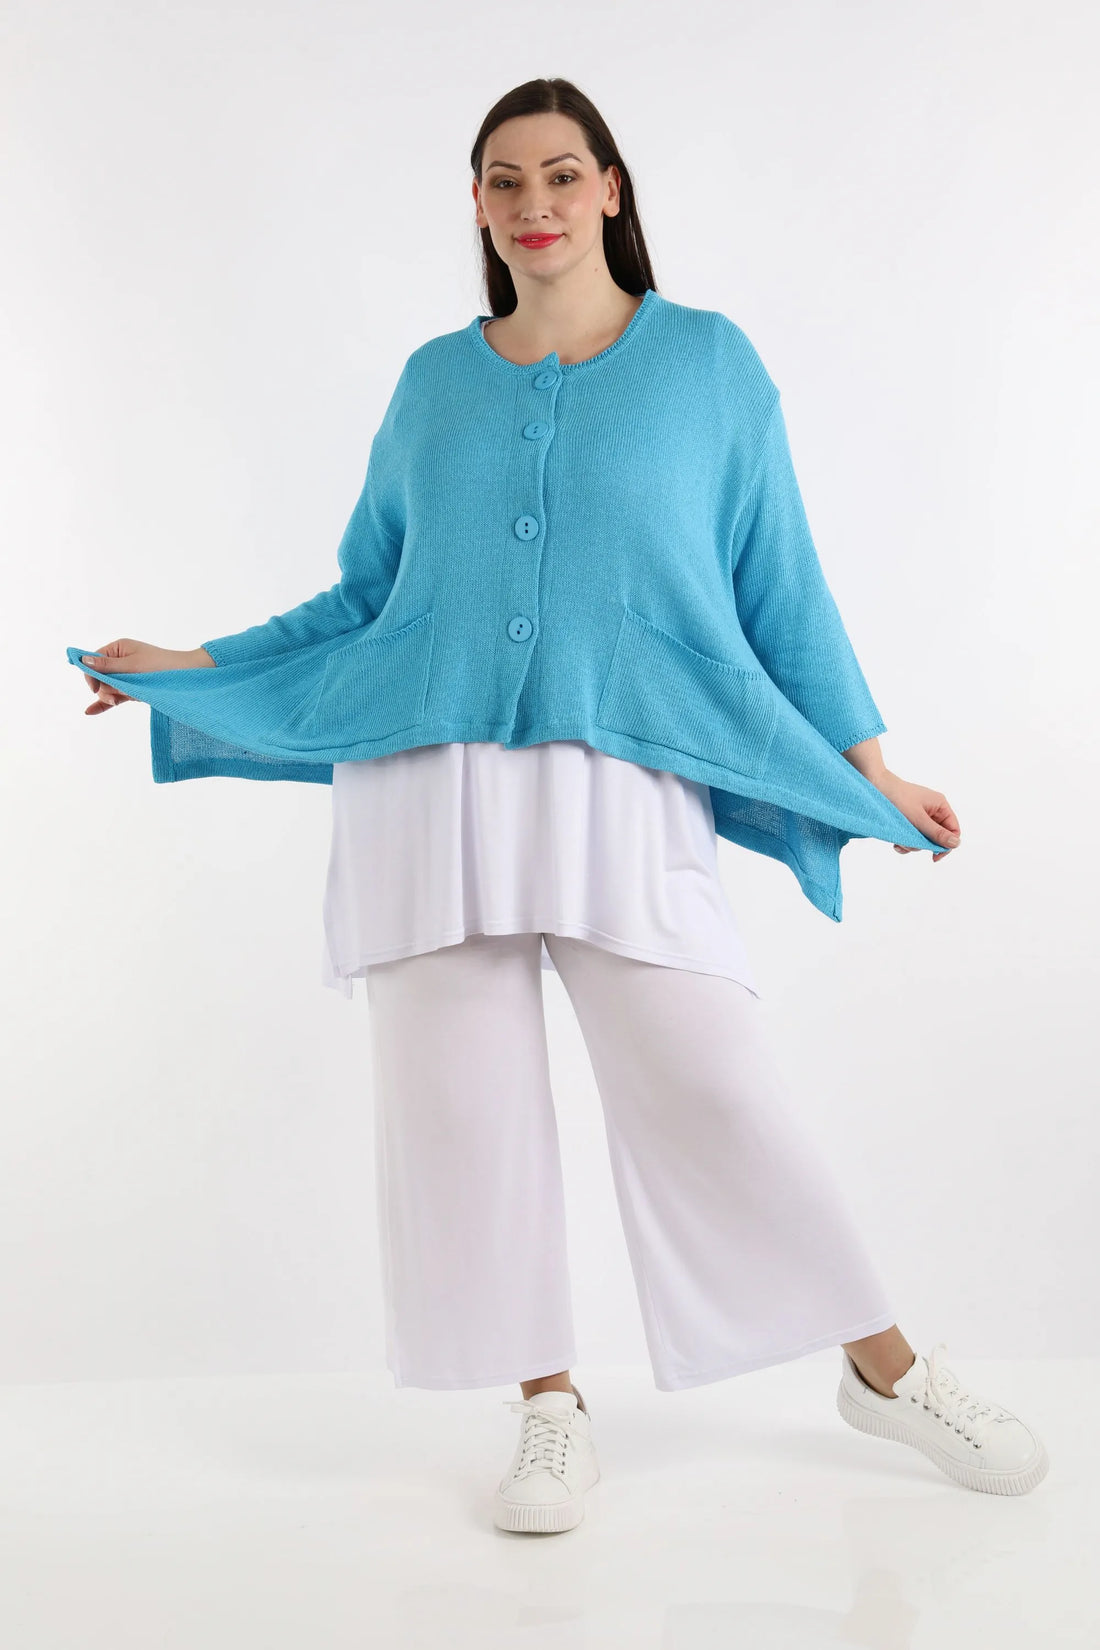 A-Form Jacke von AKH Fashion aus Baumwolle, 1110.00118, Türkisblau, Unifarben, Ausgefallen